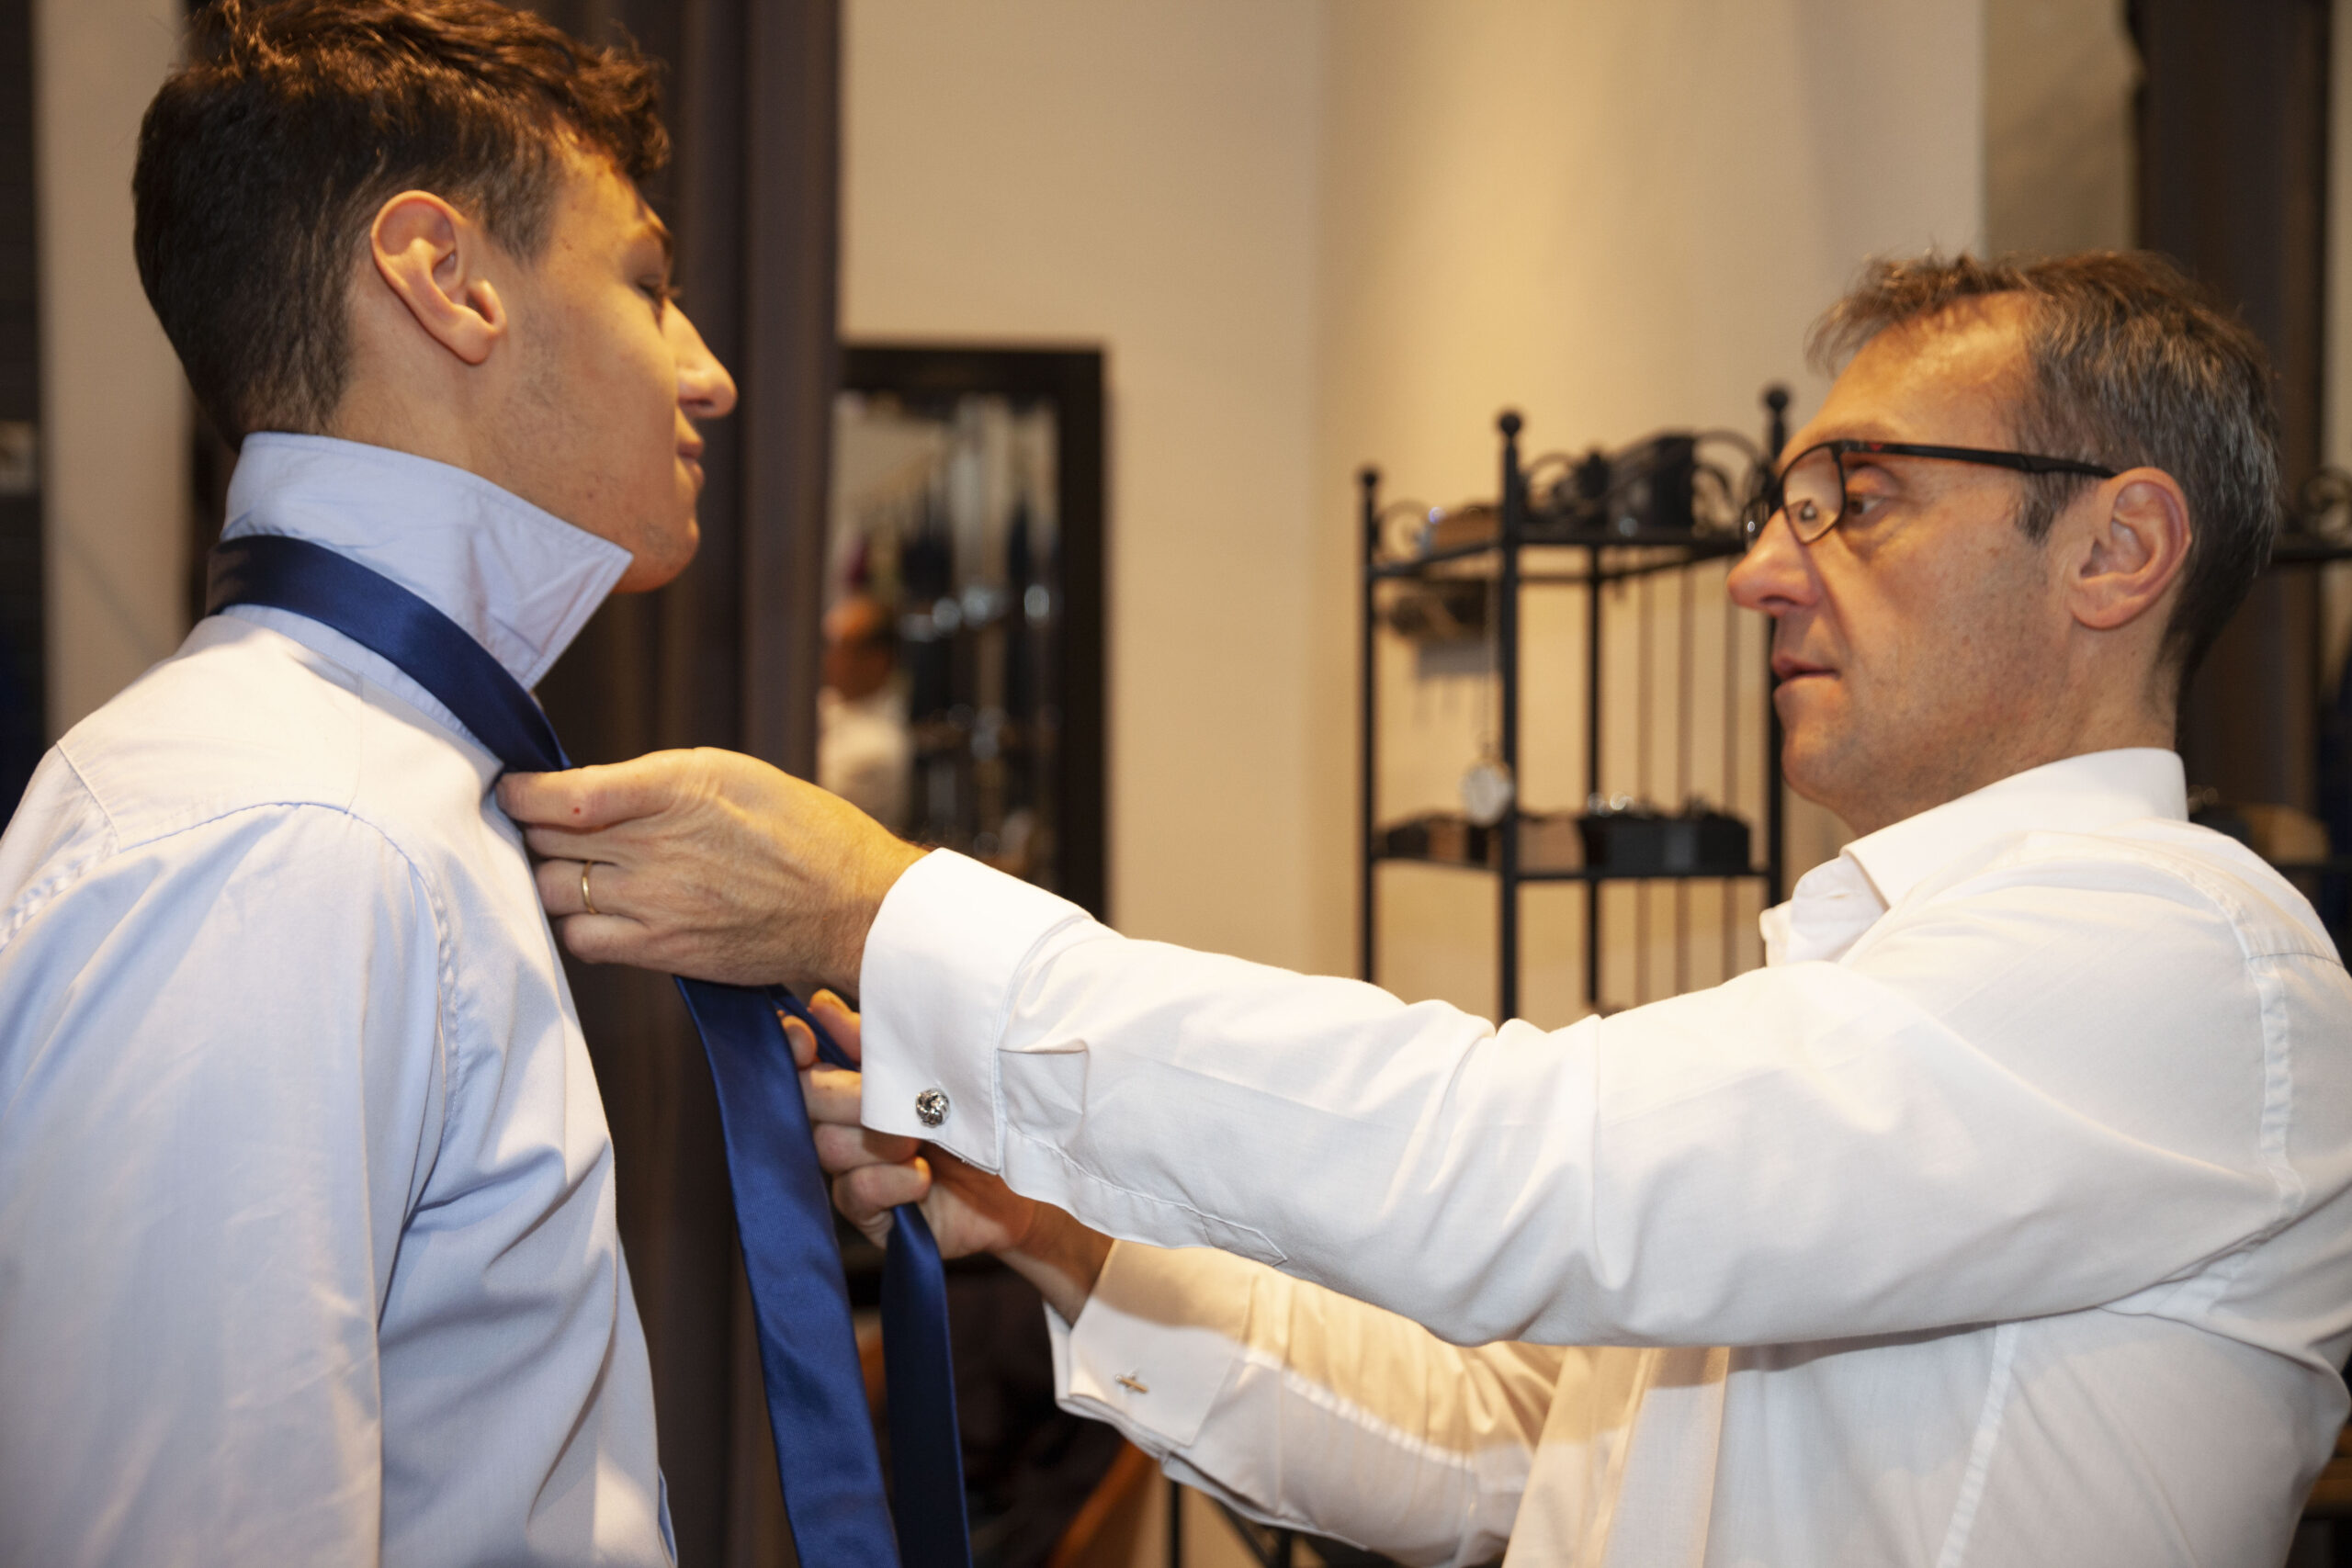 jeff append à ses client l'art du nœud de cravate